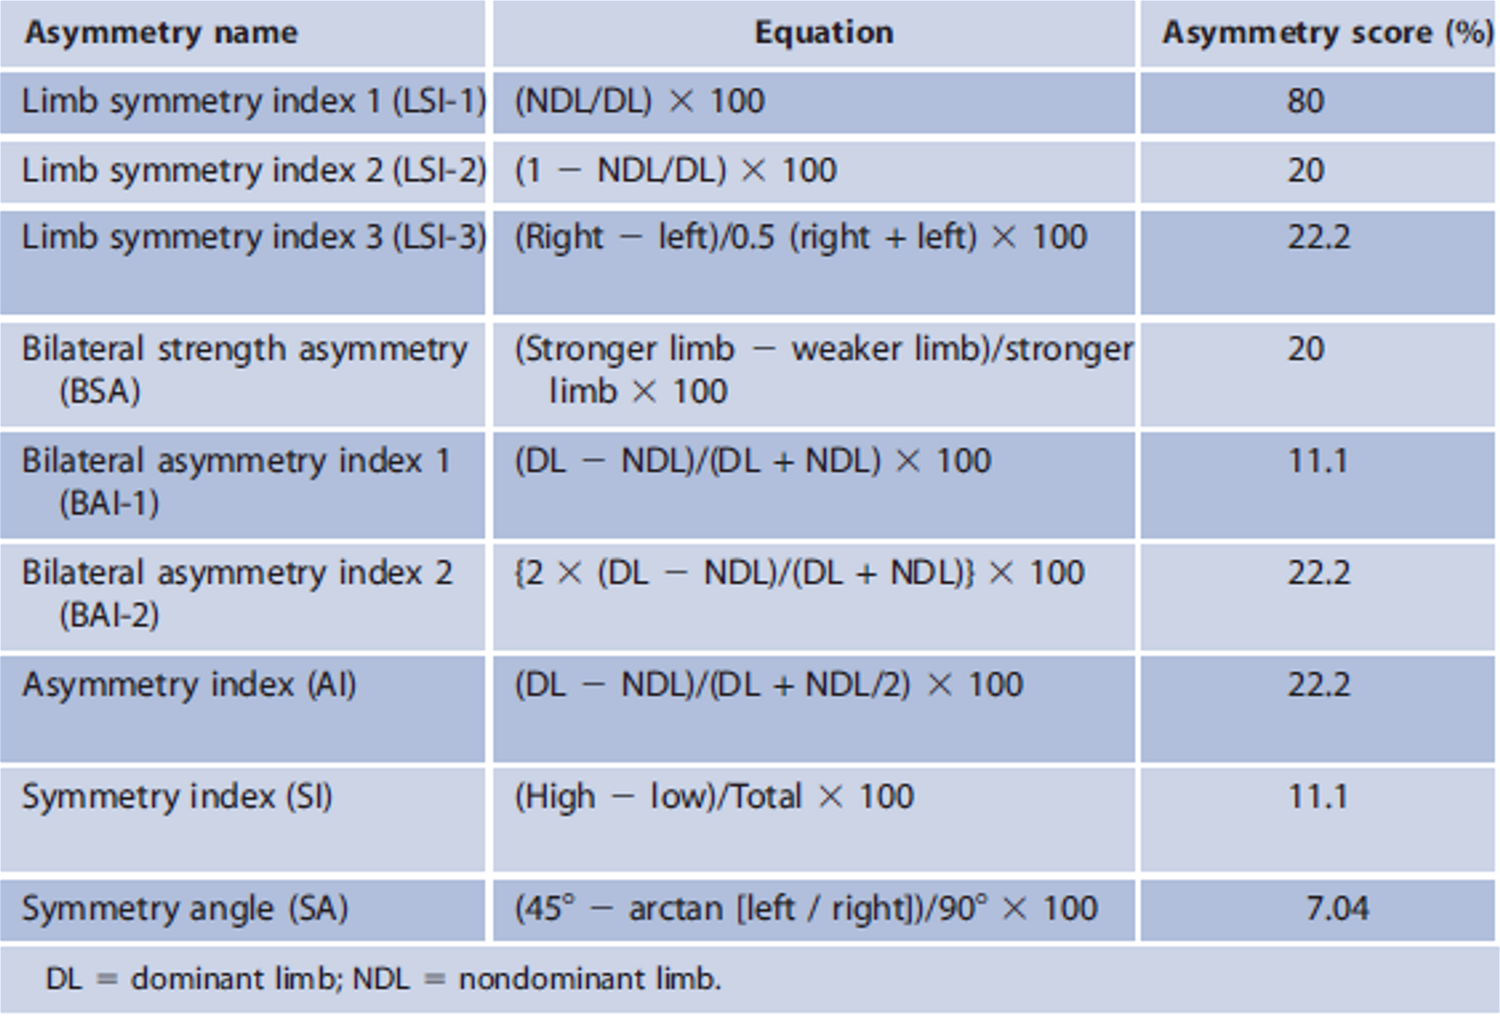 Figura 1. Diferentes fórmulas utilizadas en la literatura para el cálculo de asimetrías. Extraído de Bishop et al. [8].